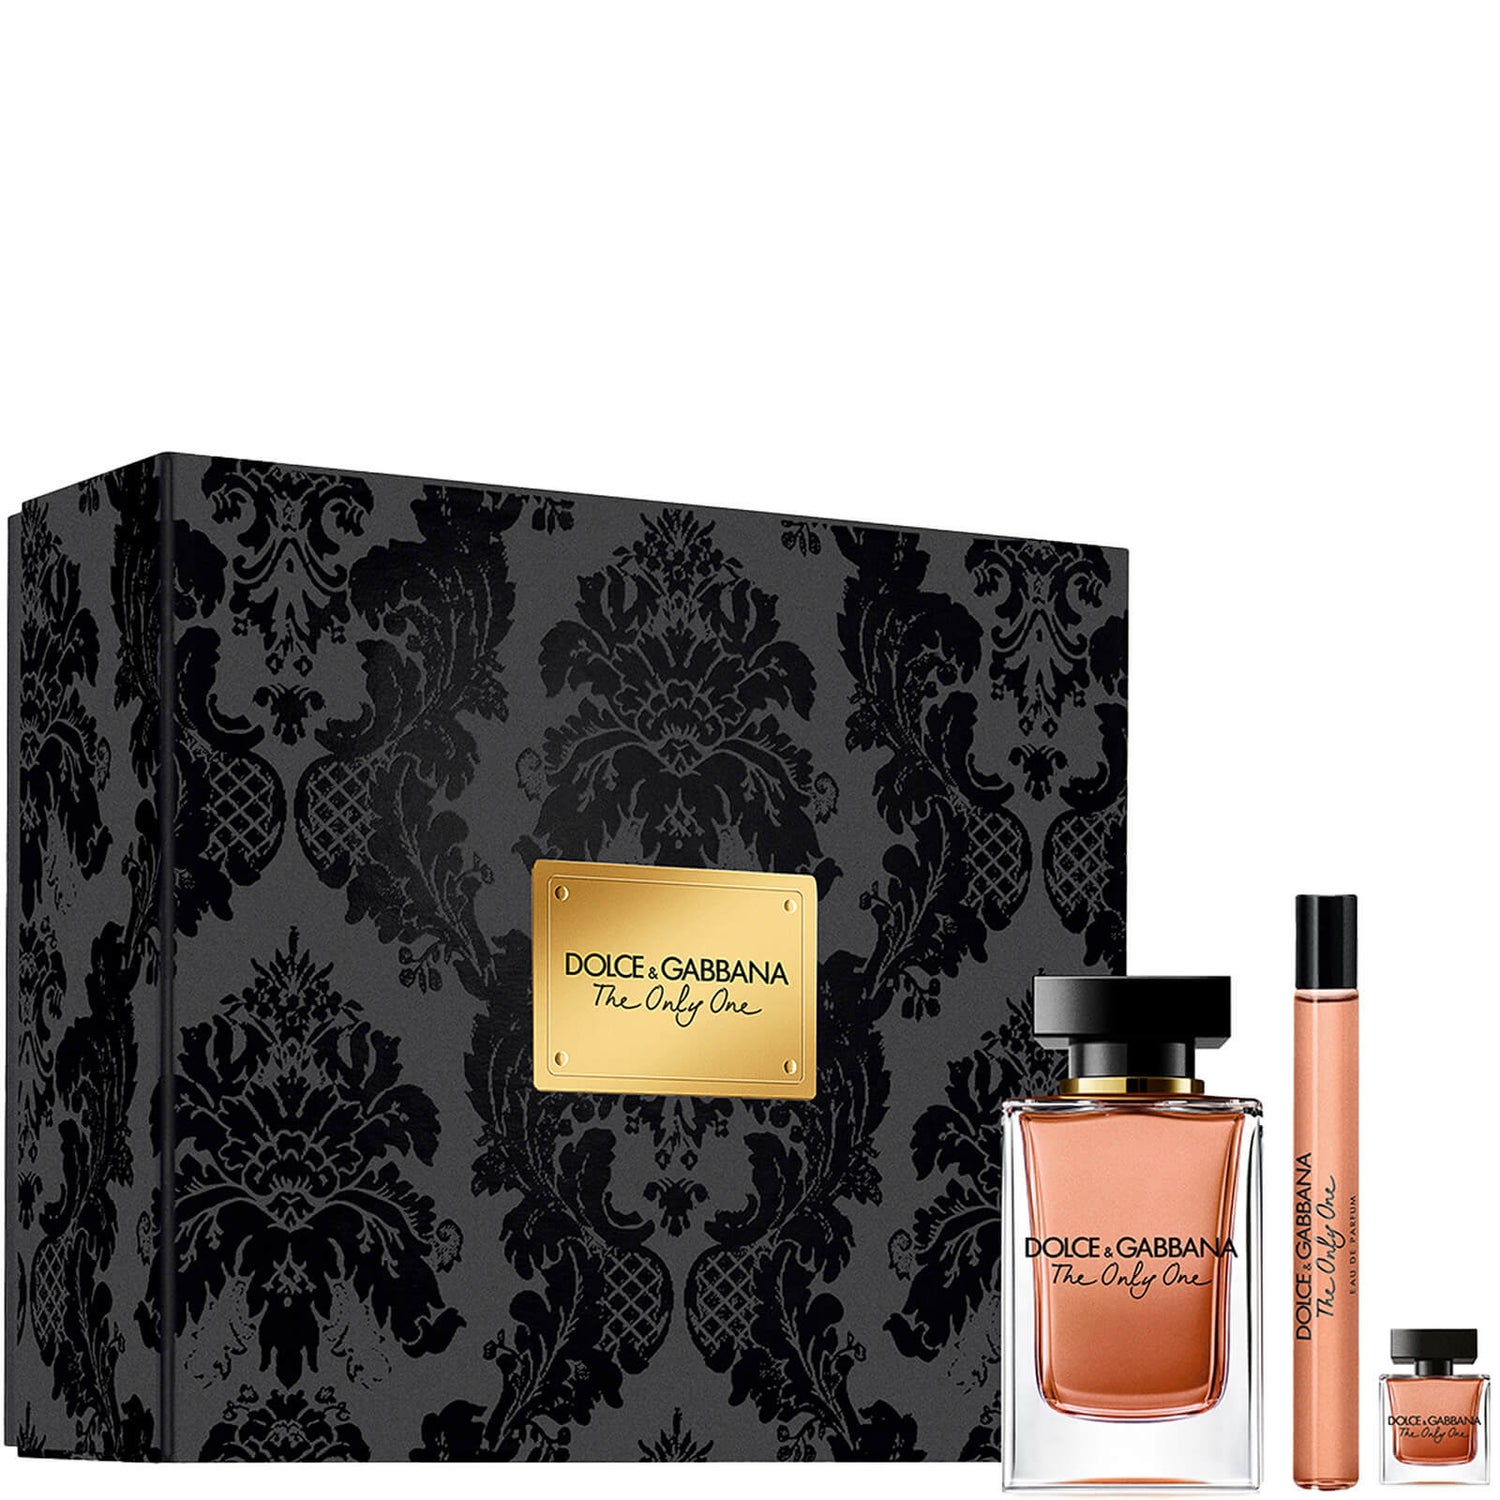 Dolce&Gabbana The Only One Eau de Parfum Travel Set